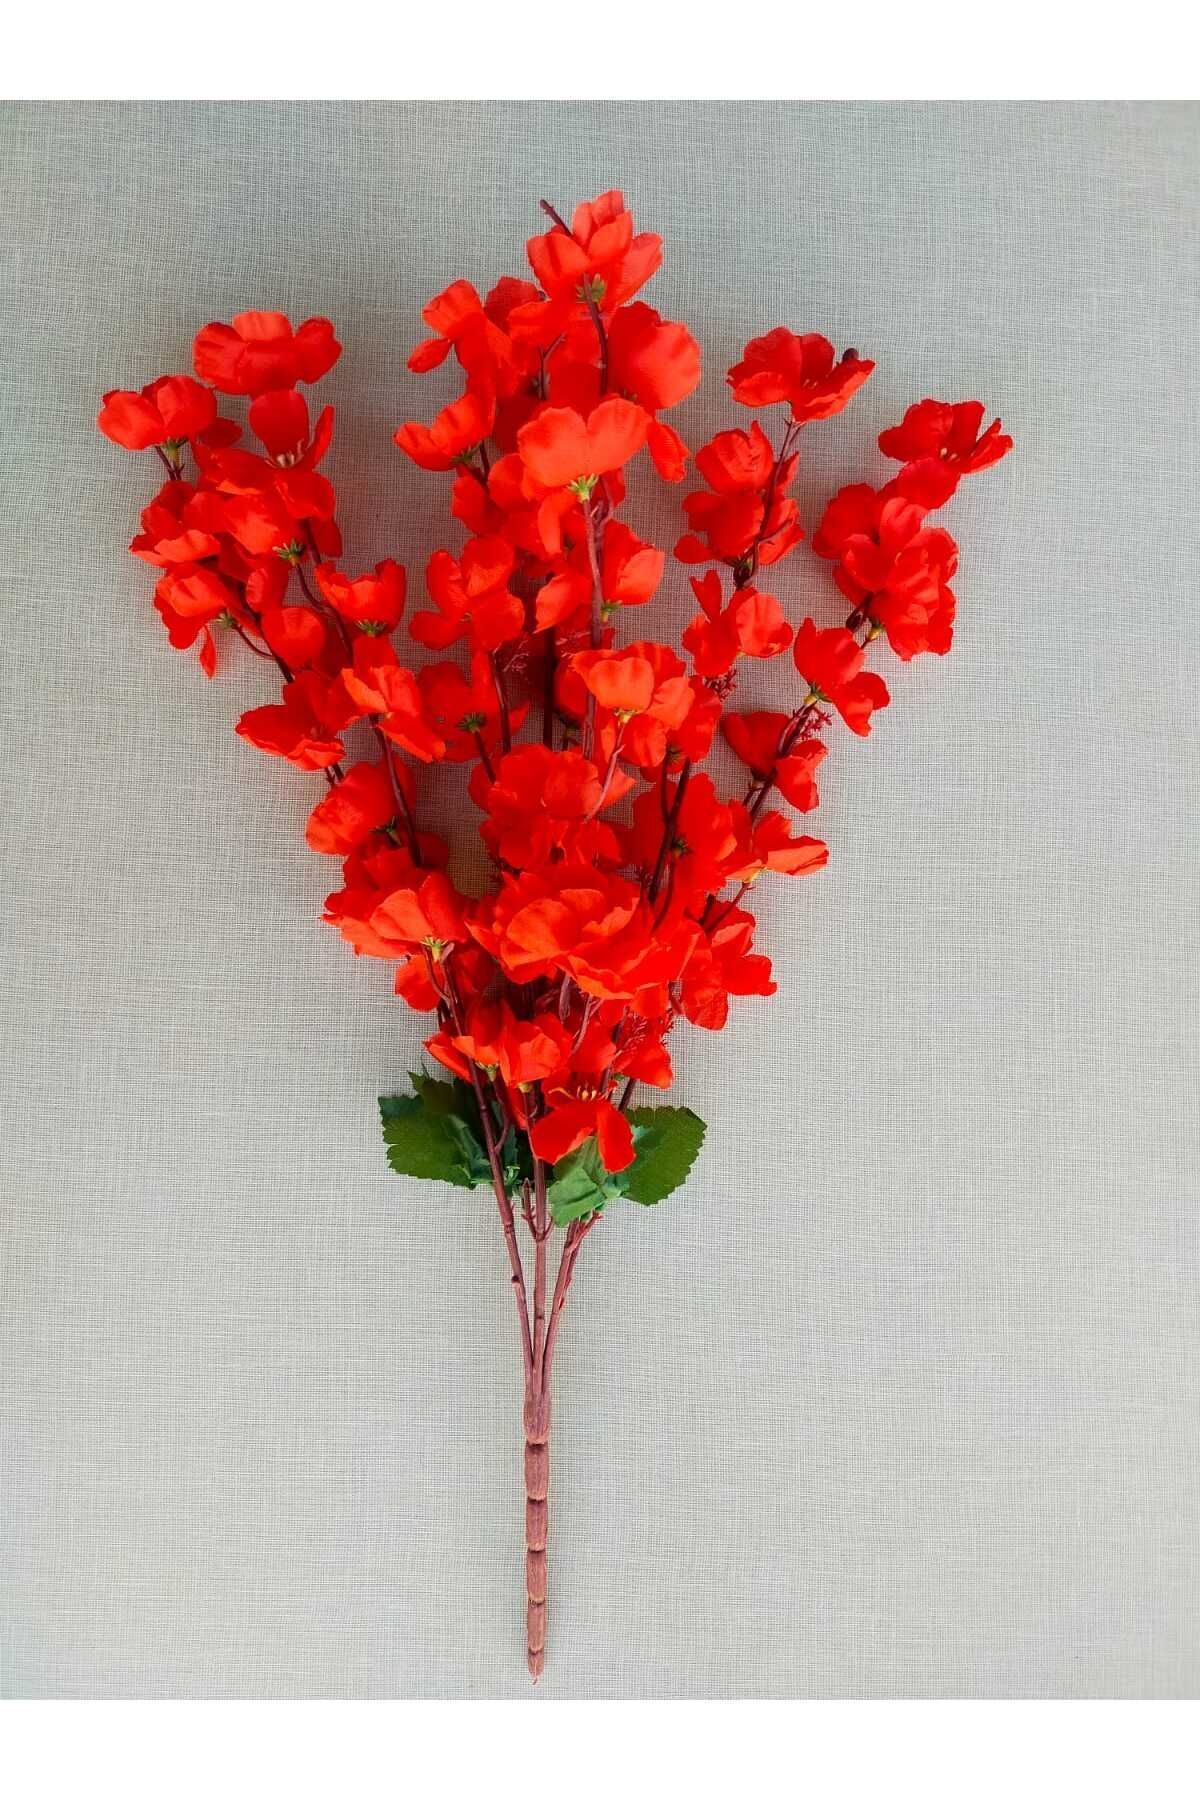 ALSHOP Japon Kiraz Çiçeği 7 Dallı Yapay Çiçek Demeti Bahar Dalı 55 Cm Kırmızı